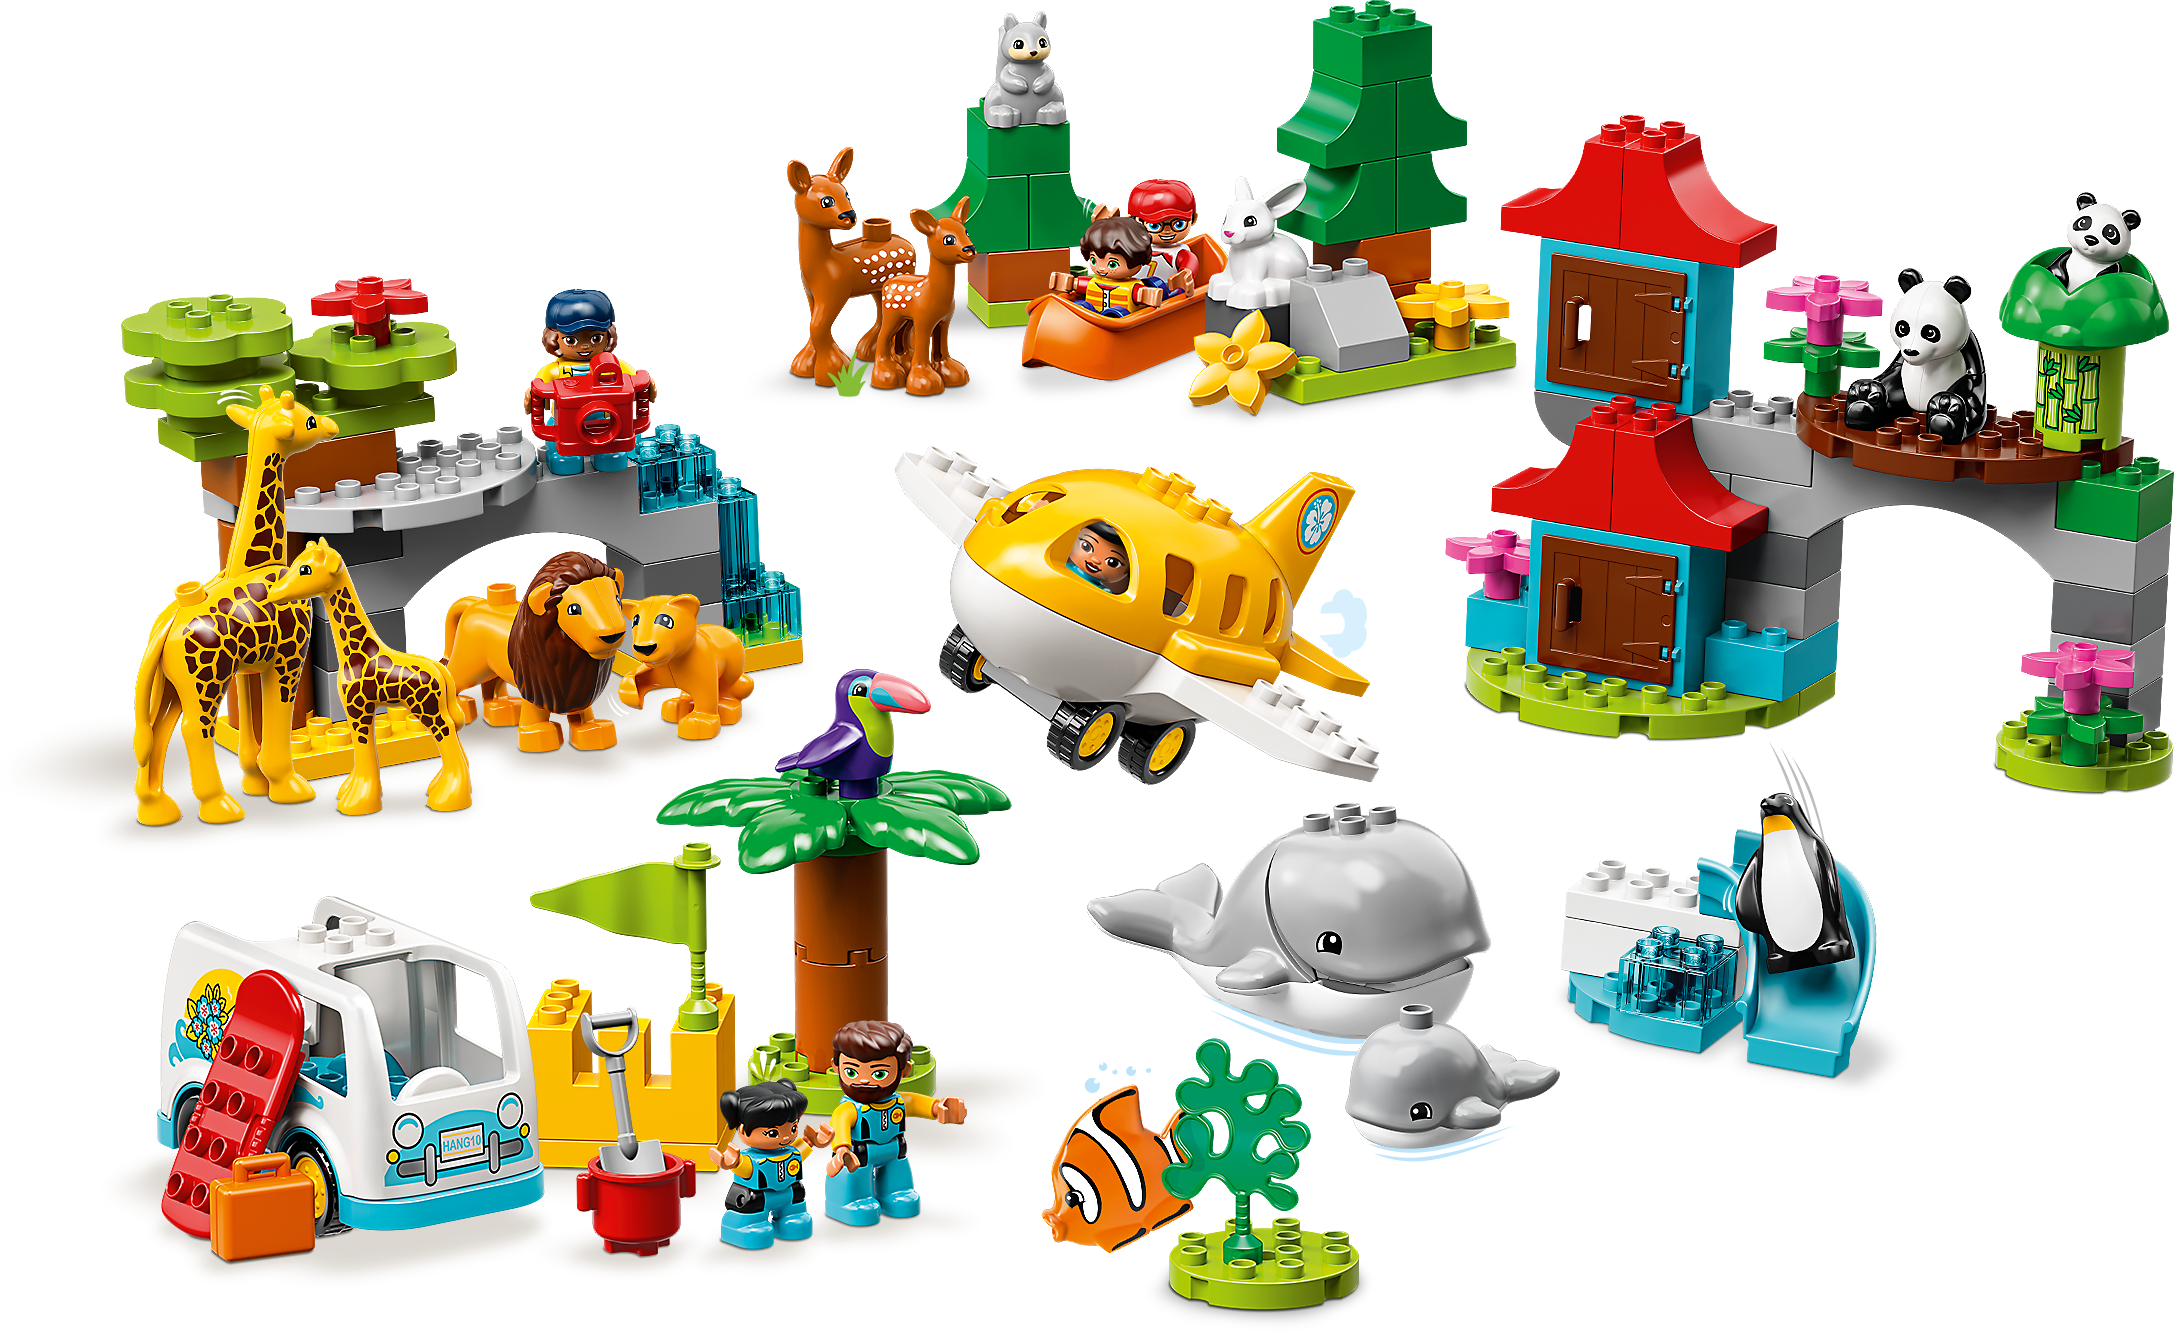 LEGO DUPLO Town World Animals 10907 Building Bricks (121 Pieces)